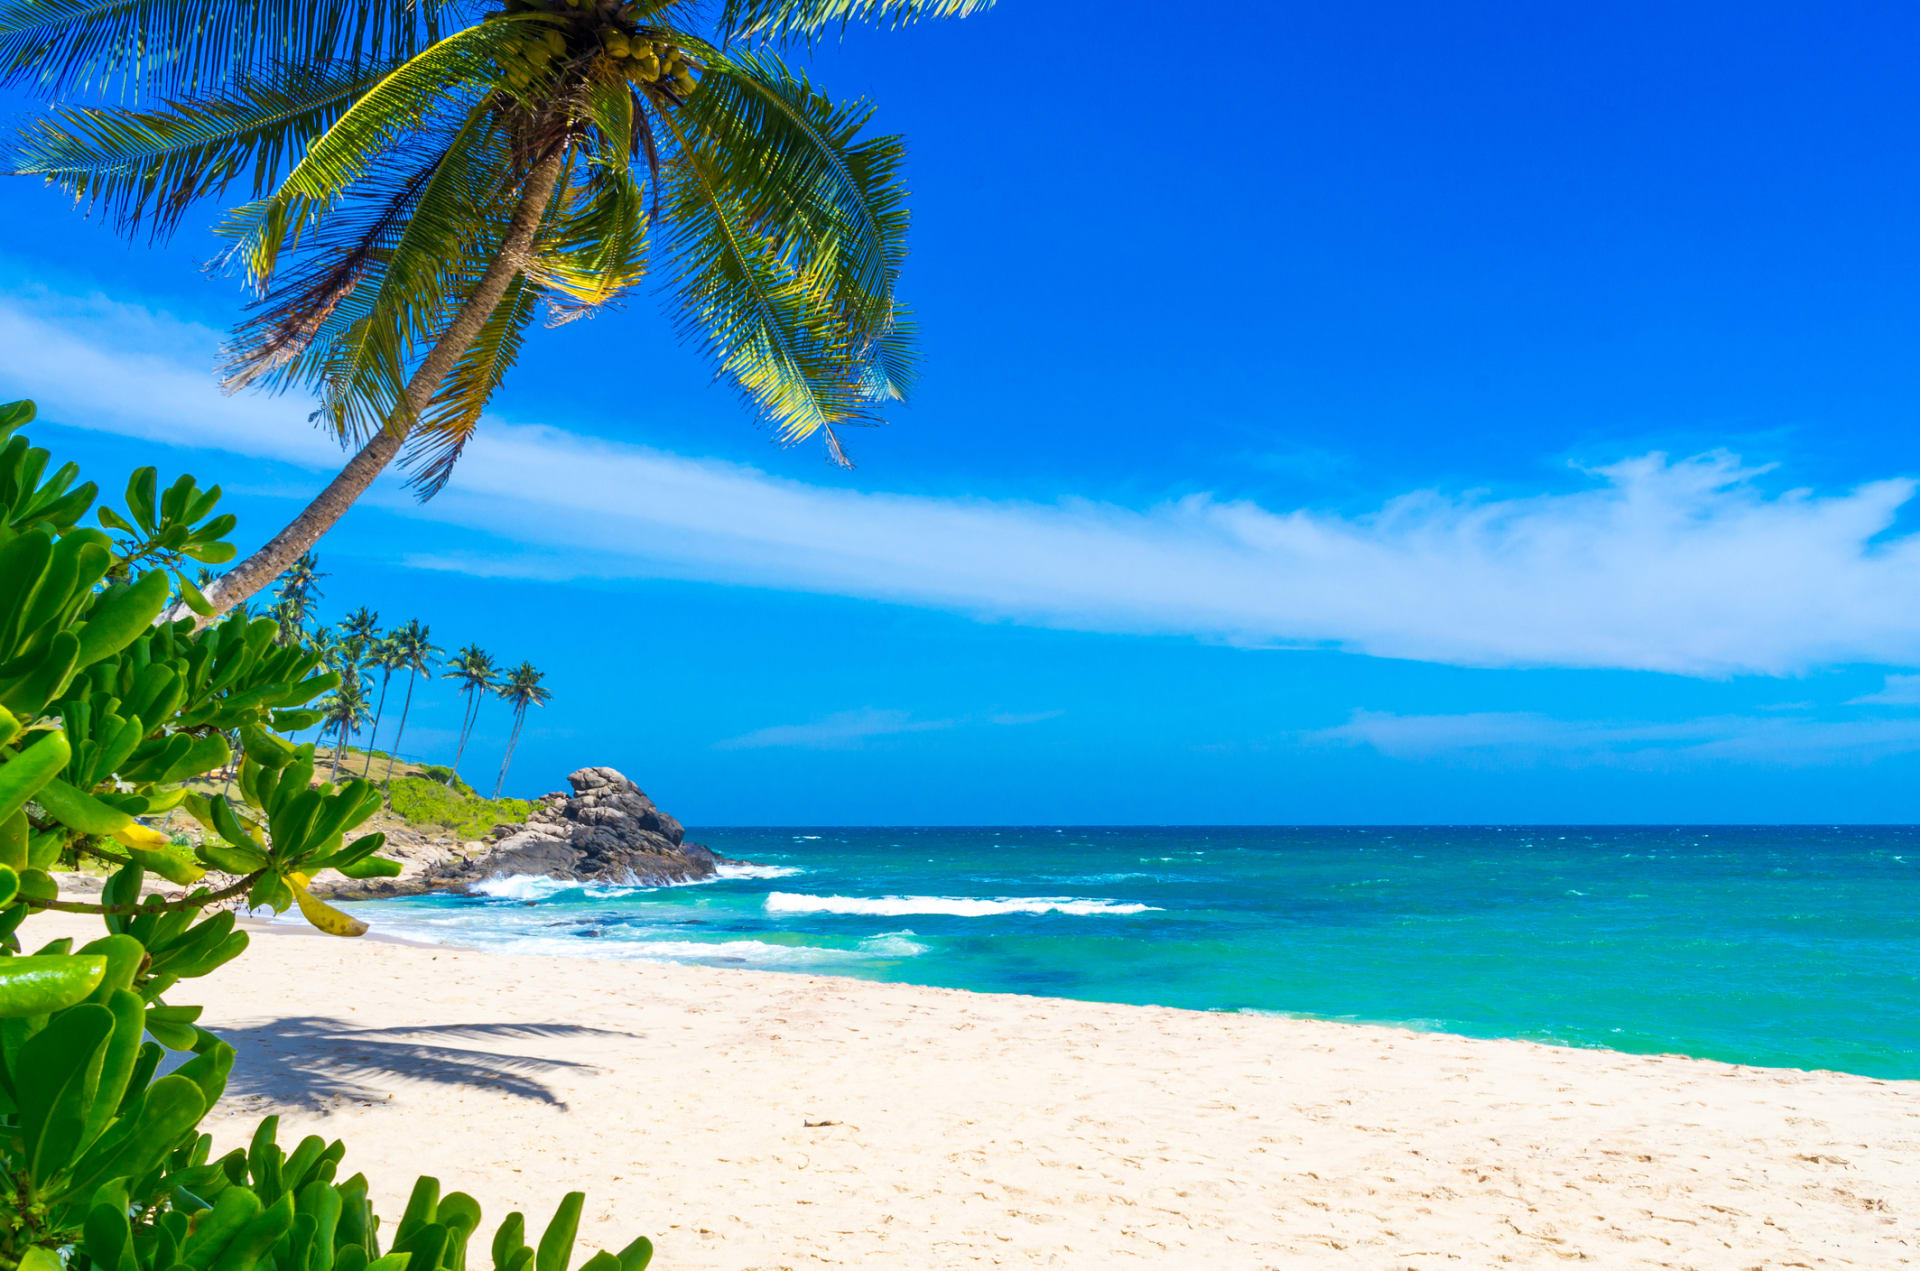 Snové pláže, panenská příroda a v neposlední řadě usměvaví lidé s otevřeným srdcem. To je Srí Lanka